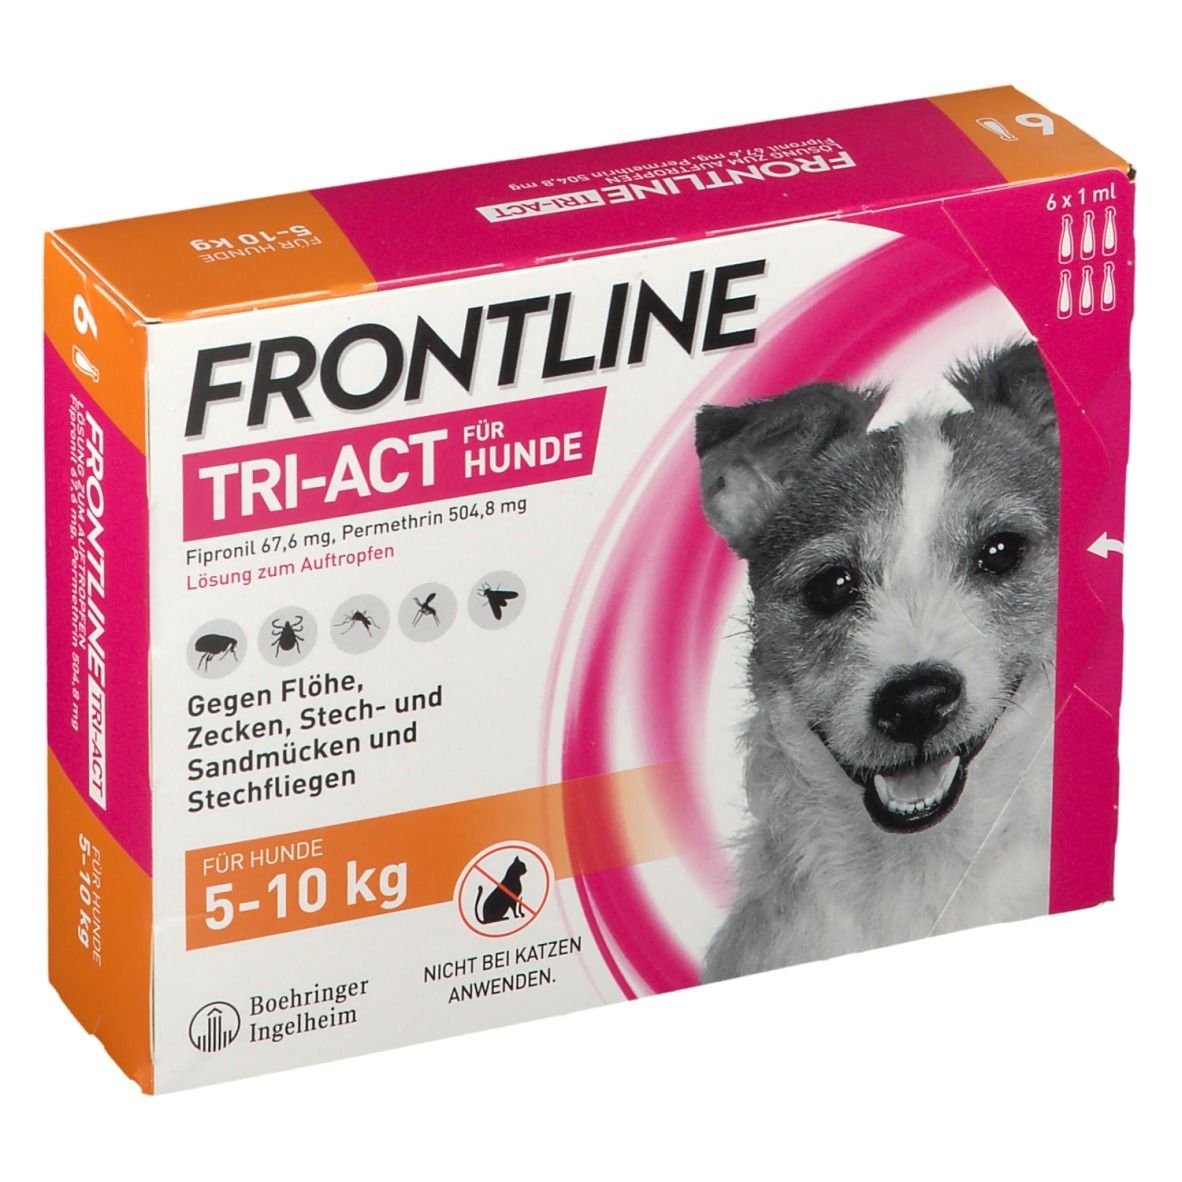 FRONTLINE® TRI-ACT Für Hunde